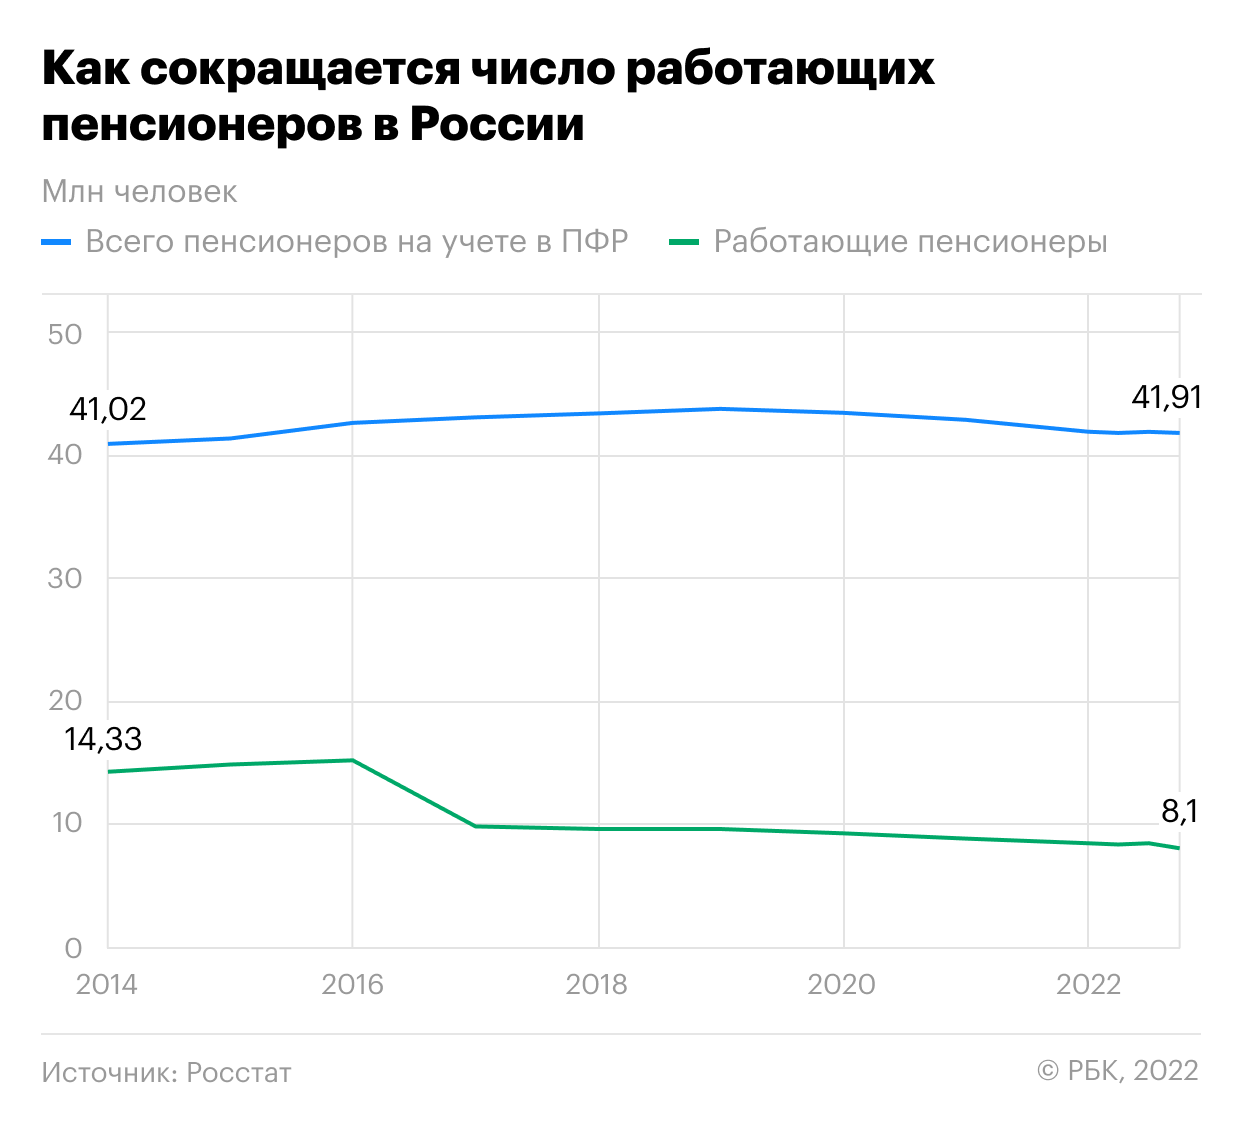 Как в России снижалось число работающих пенсионеров. Инфографика